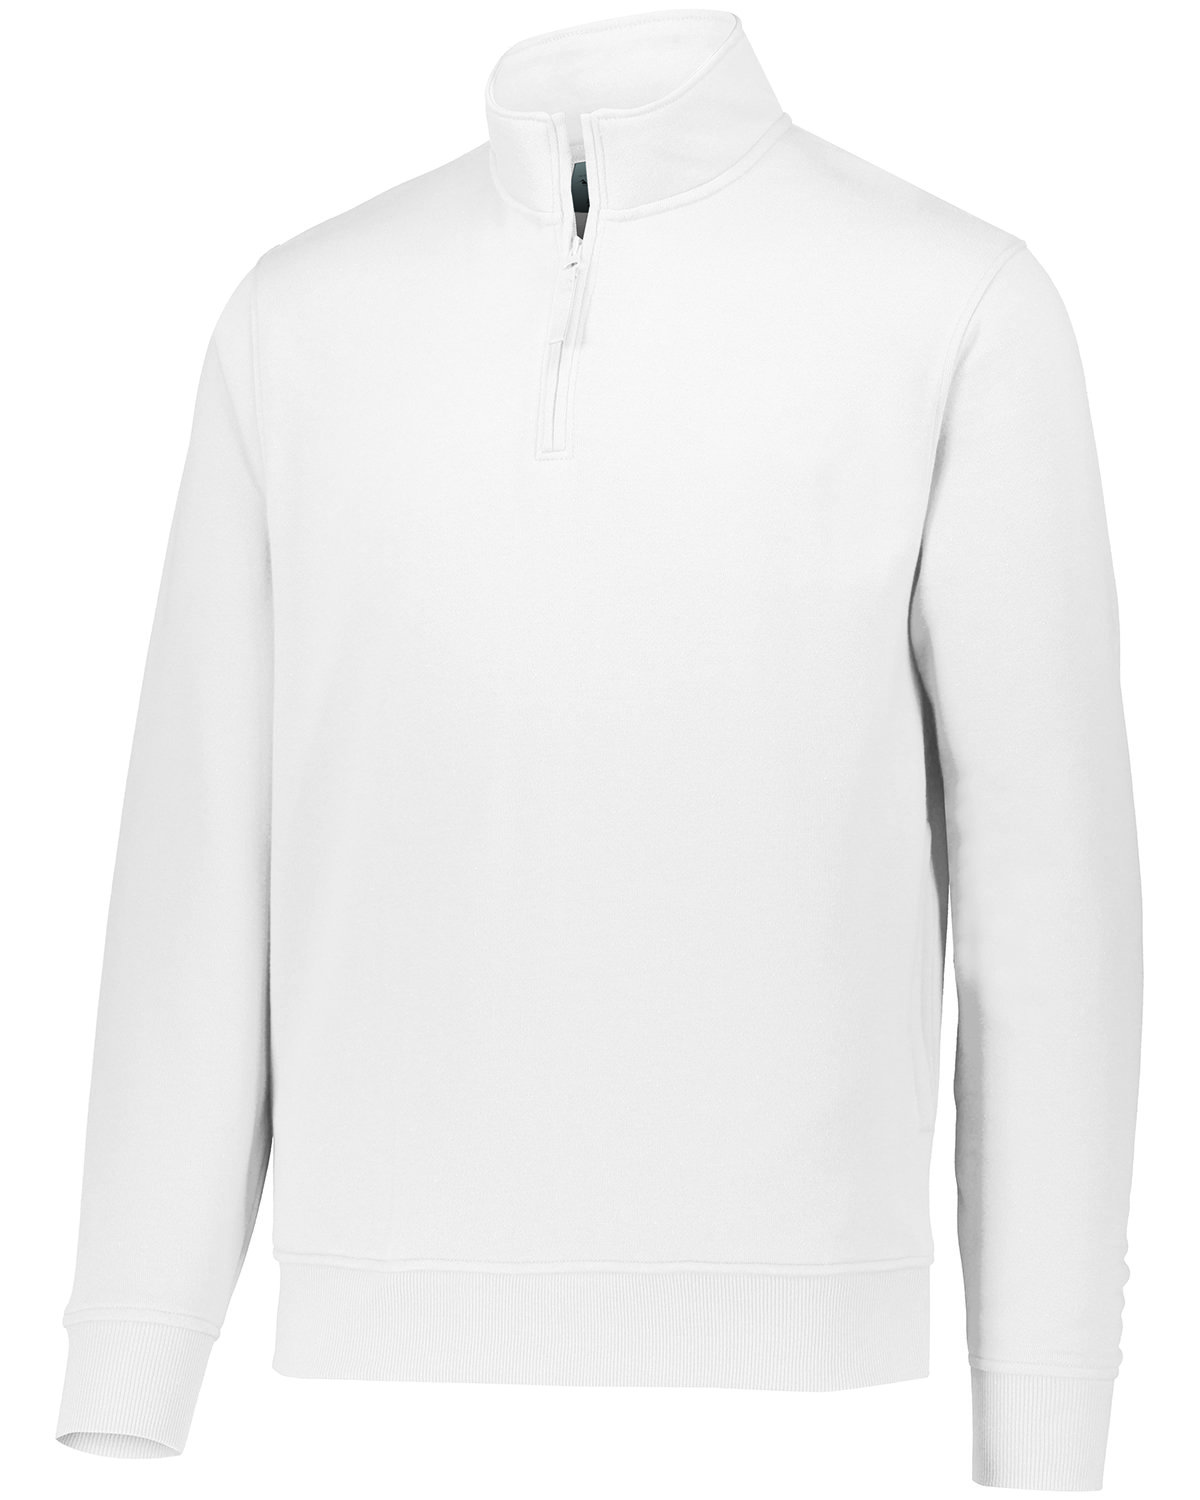 Adult Fleece Pullover Sweatshirt-Augusta Sportswear